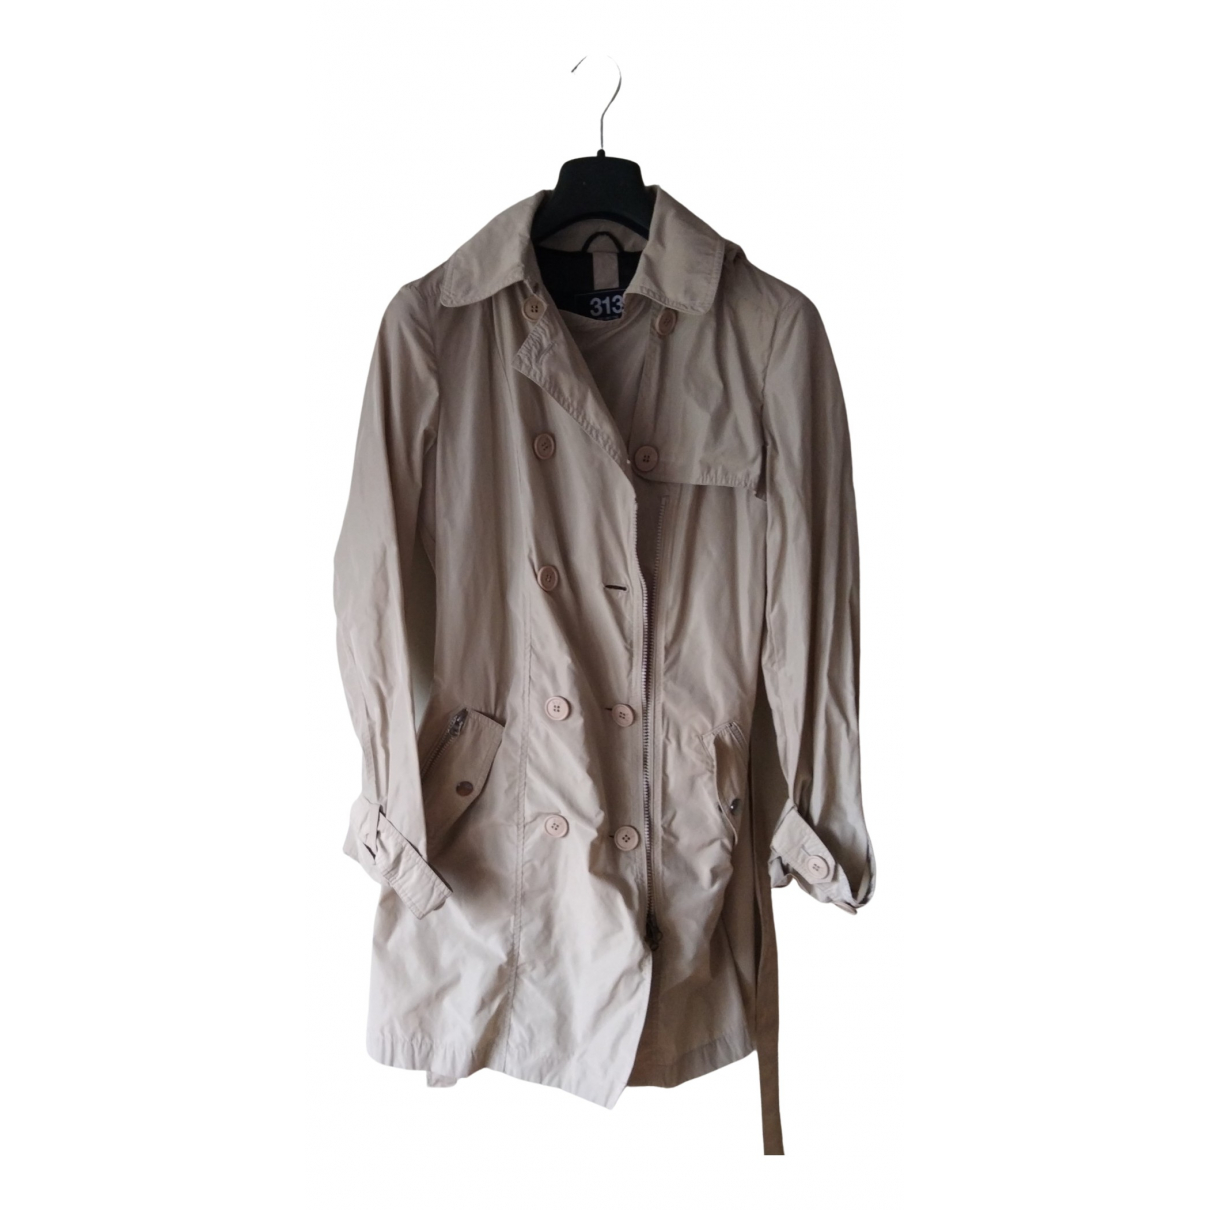 Trench coat - 313 - Modalova